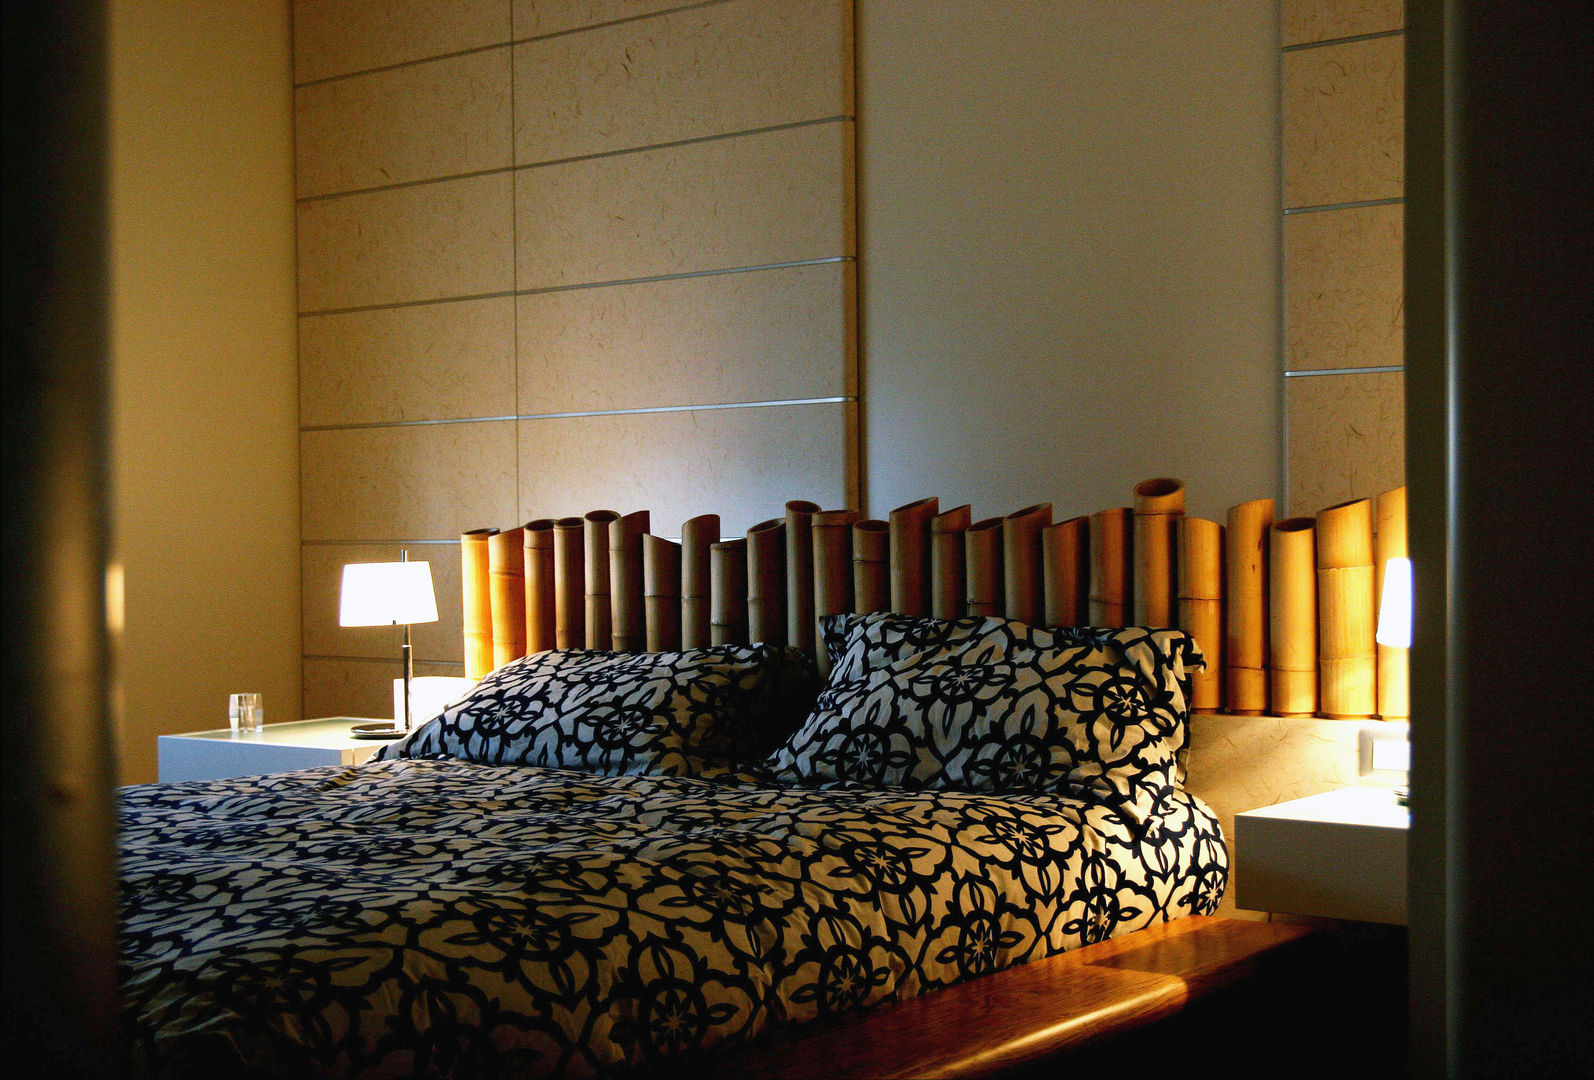 APPARTAMENTO MODERNO NEL QUARTIERE PRATI., studioQ studioQ Colonial style bedroom